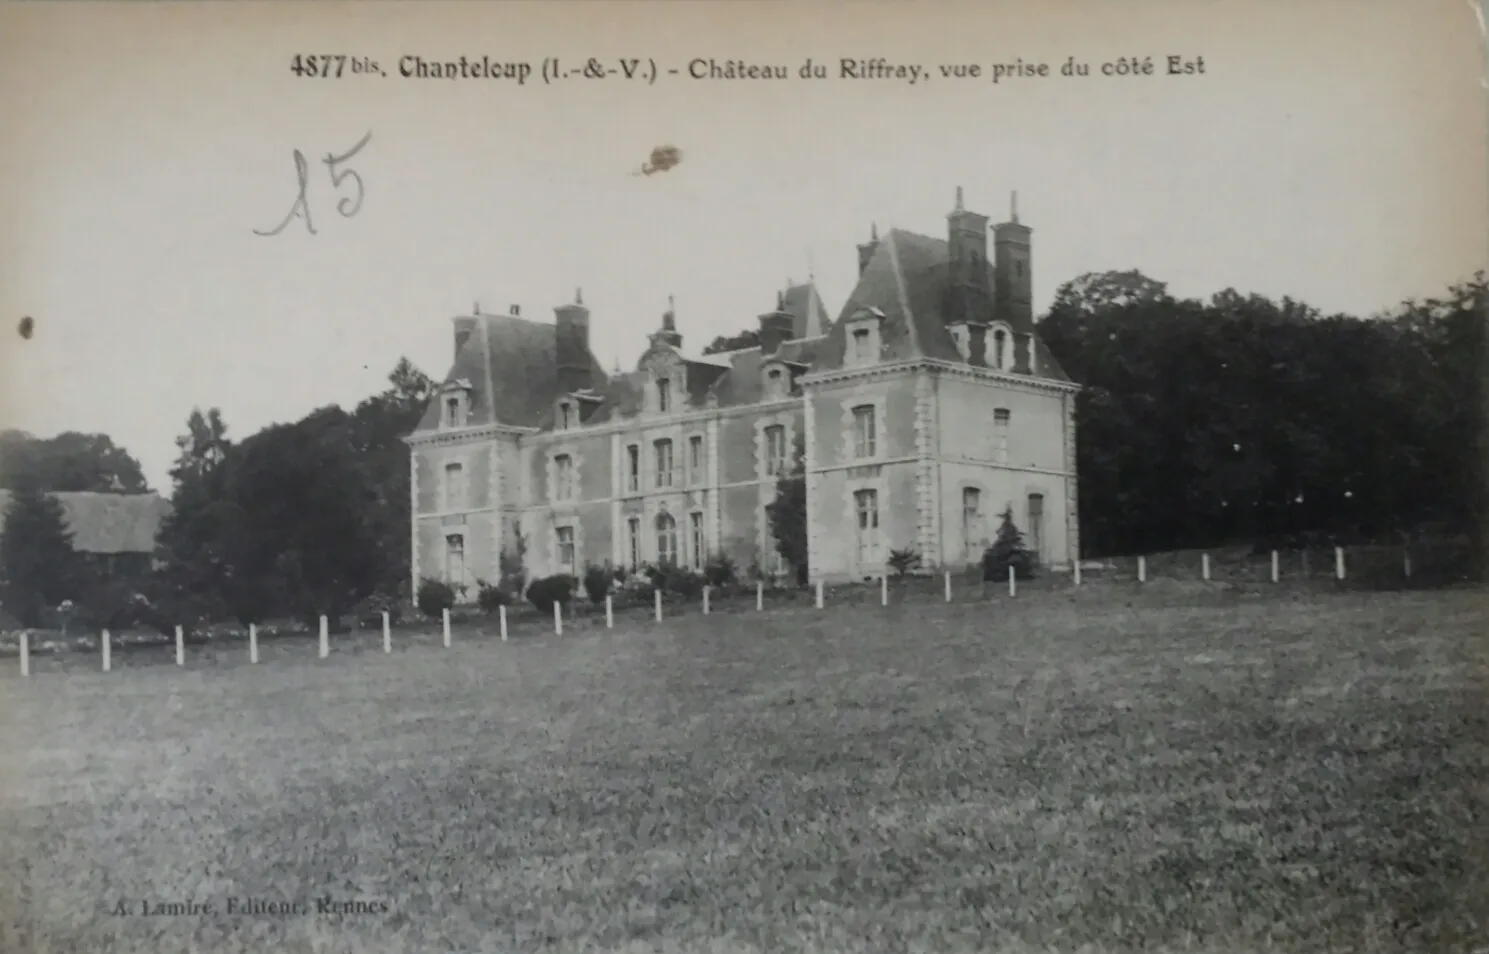 Photo showing: Chateau du riffray